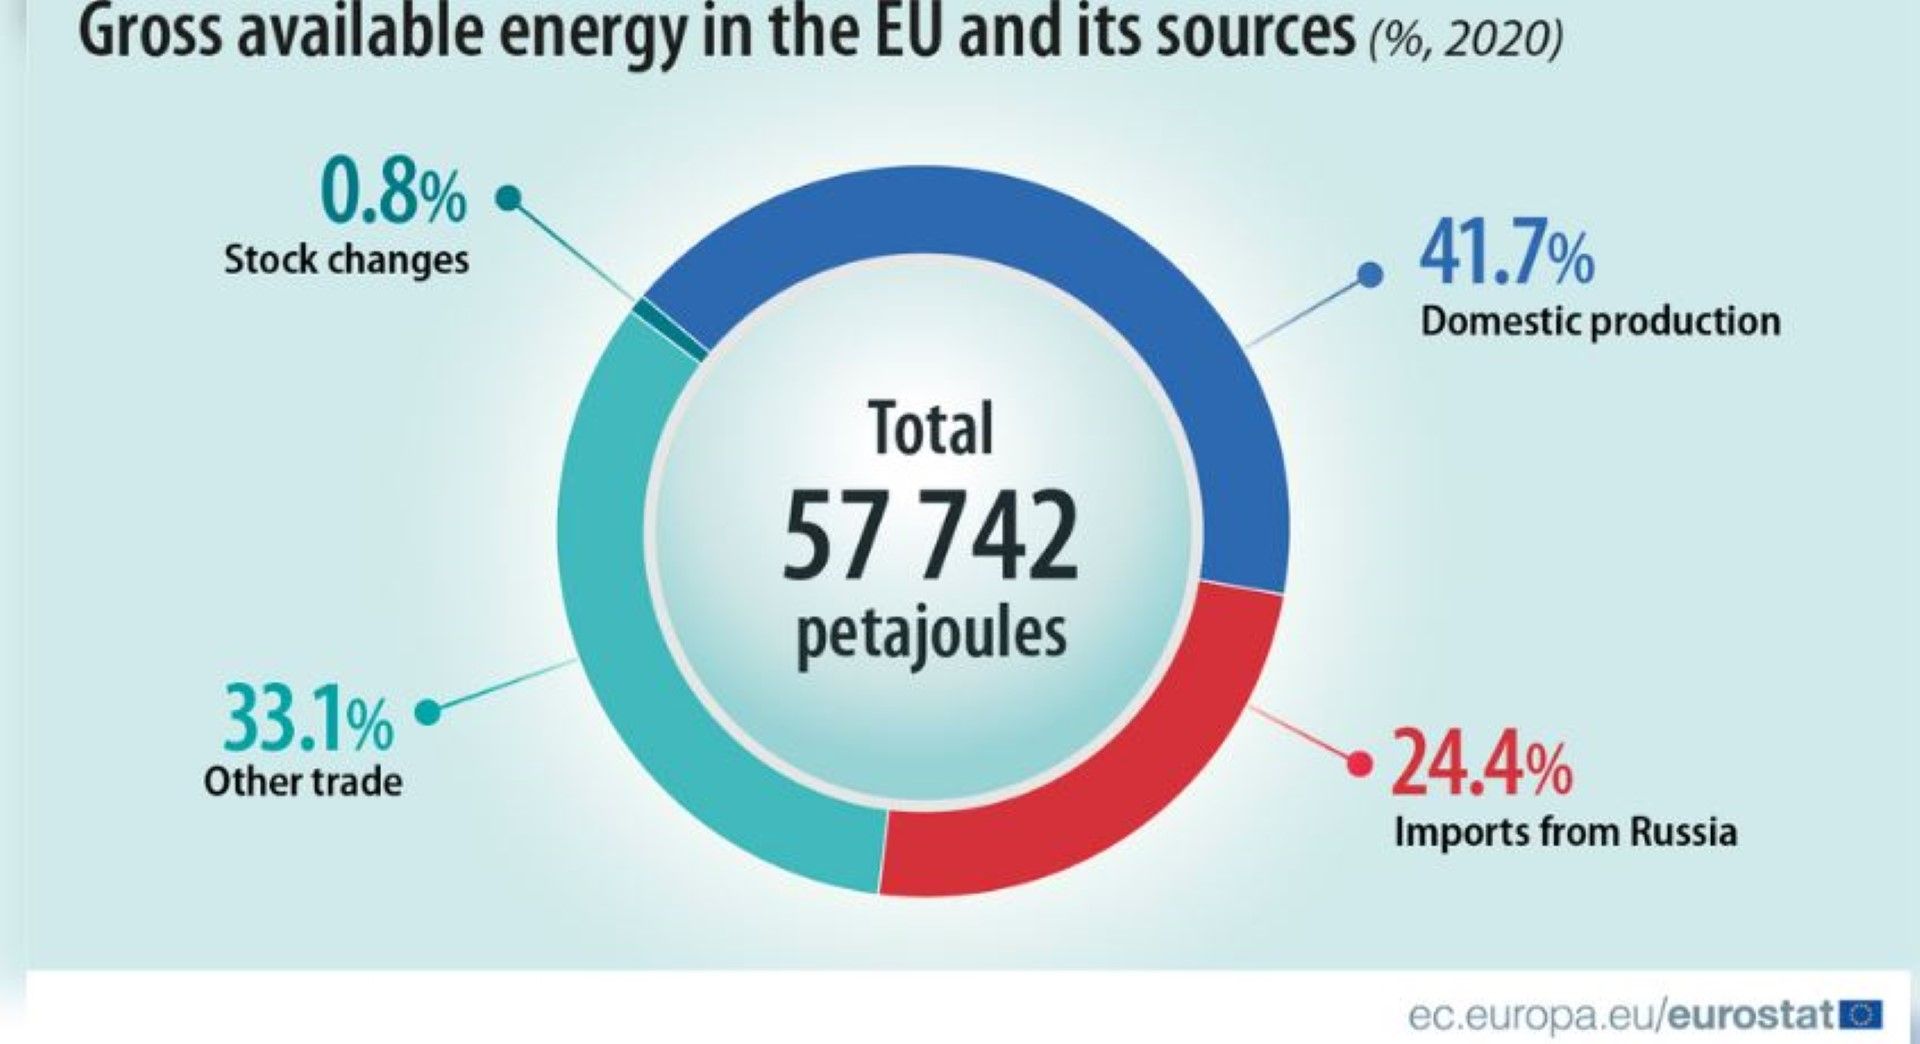 Източници на енергия в ЕС в процентни дялове за 2020 г.